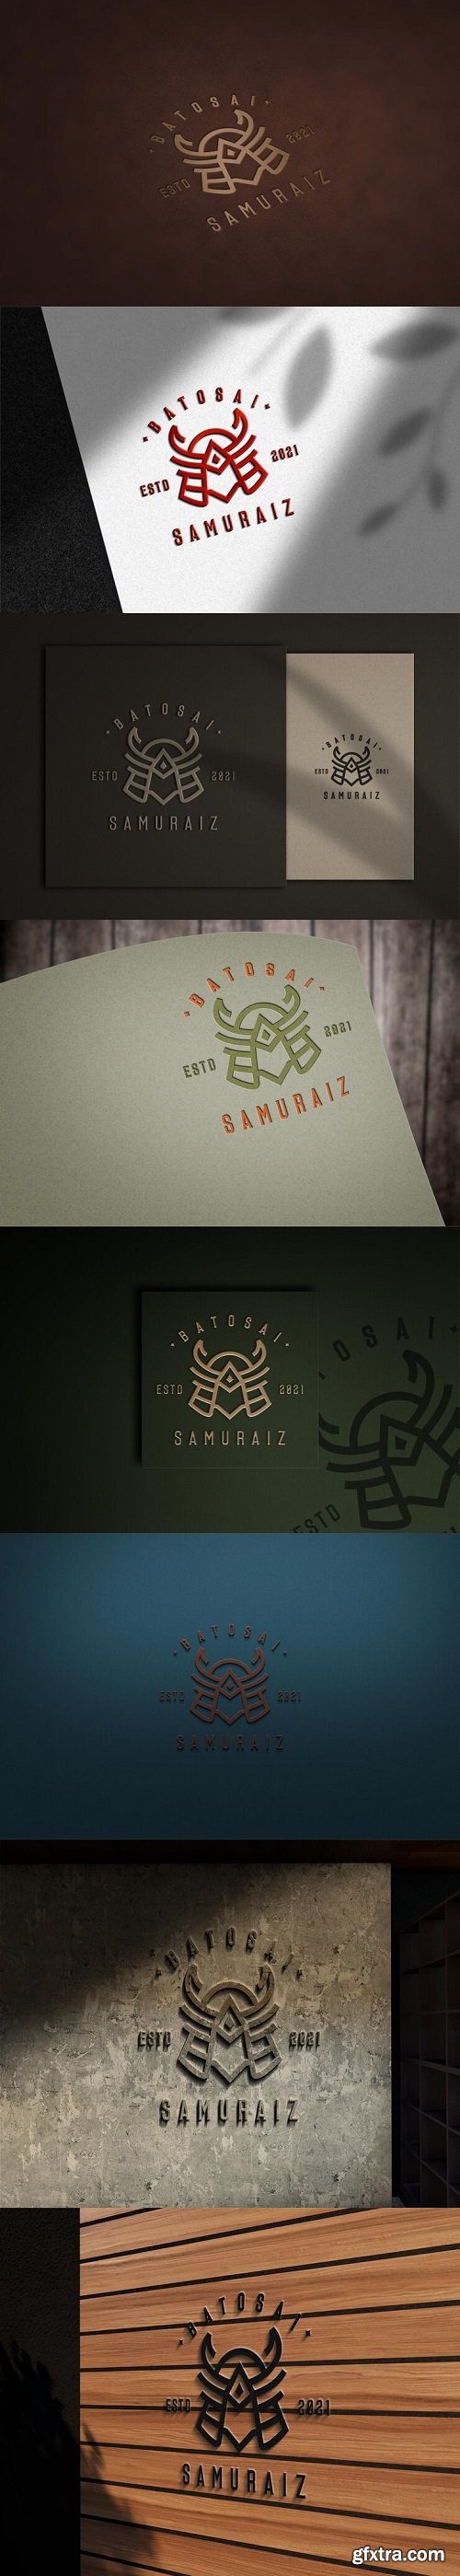 3d logo mockup design